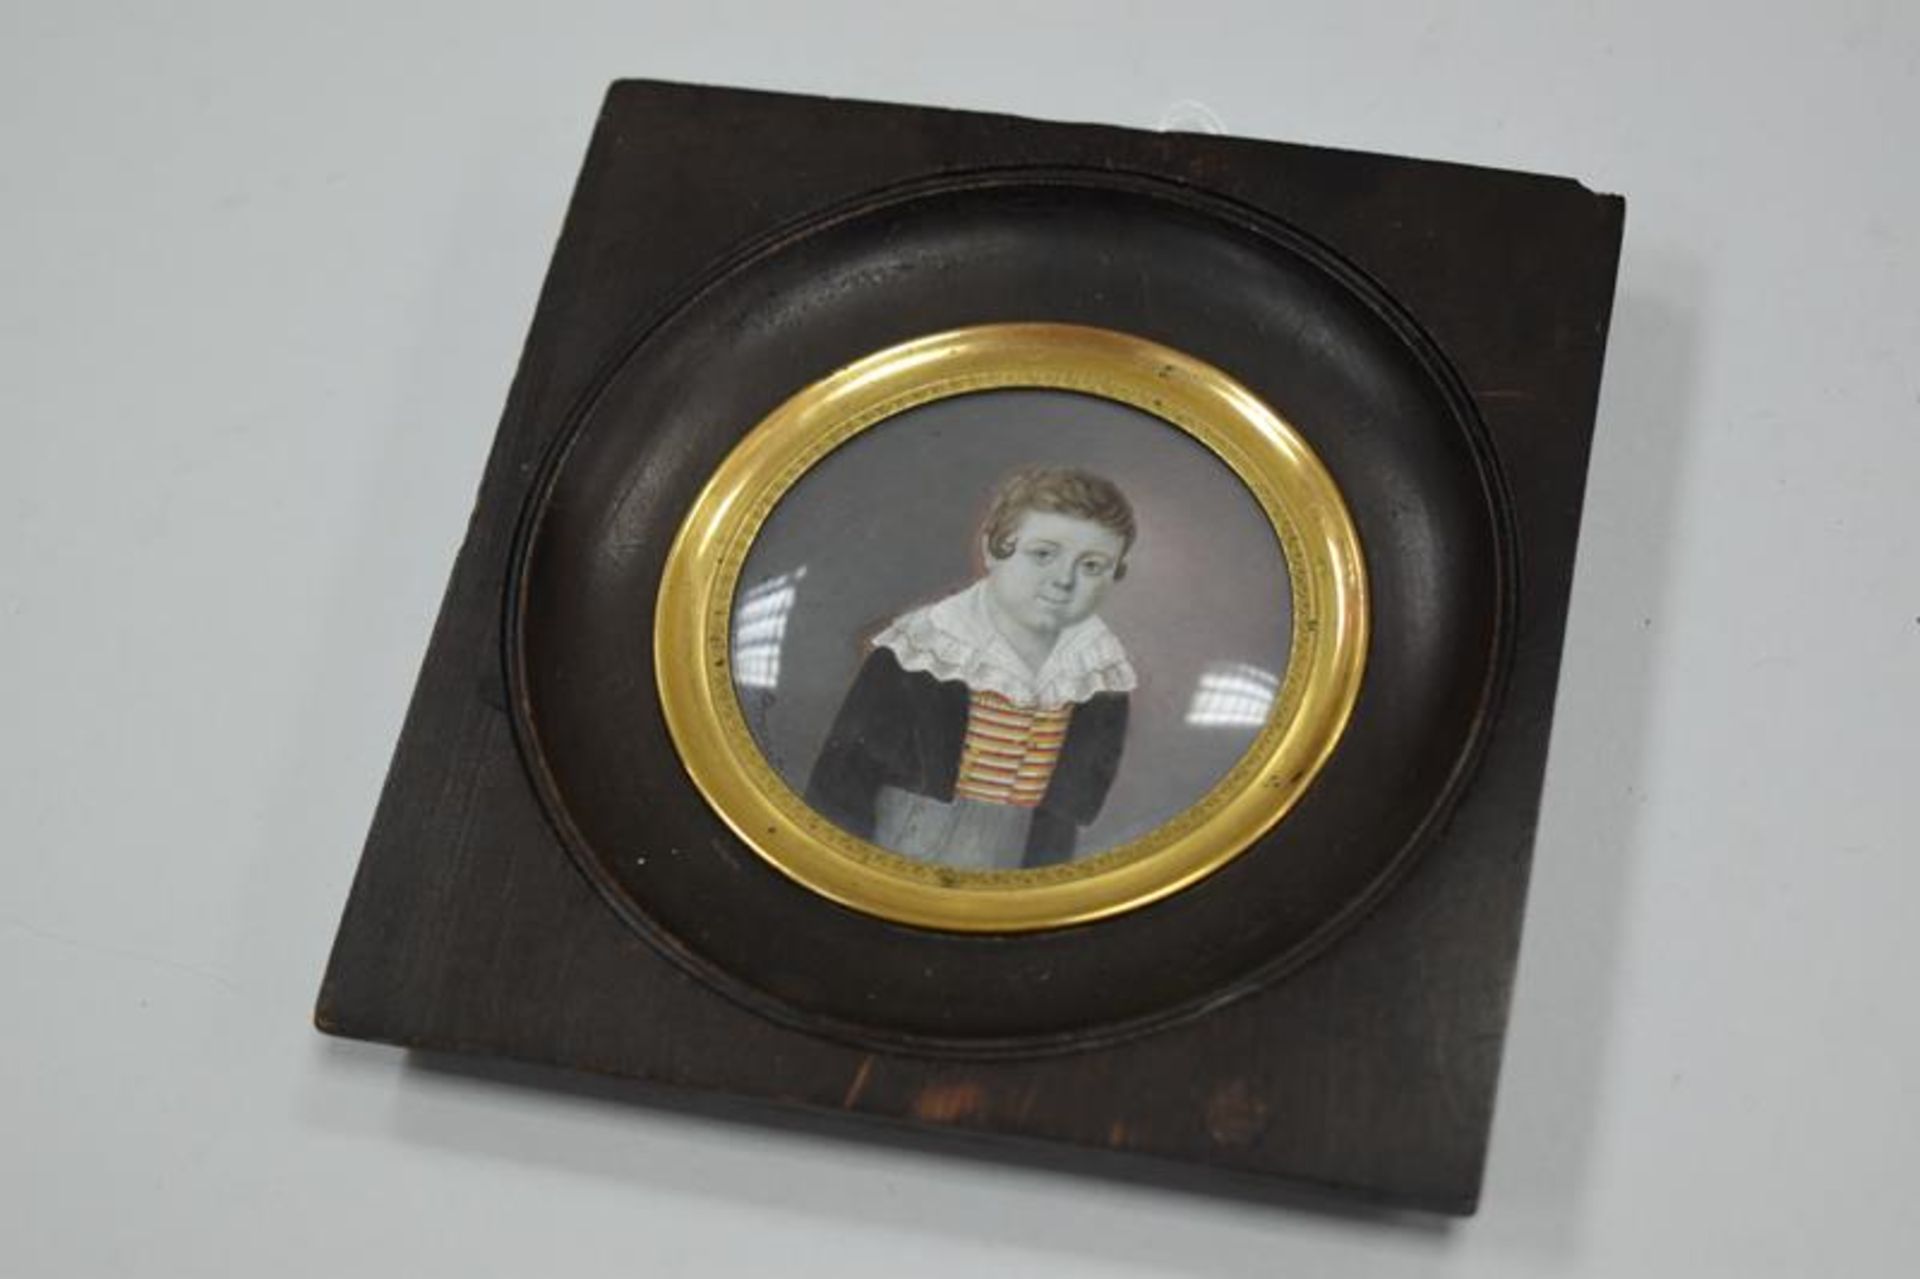 Antoinette Brunet (1800-1825) Miniatur kleiner Junge "fin 1820"Mindestpreis 60Bezeichnung Antoinette